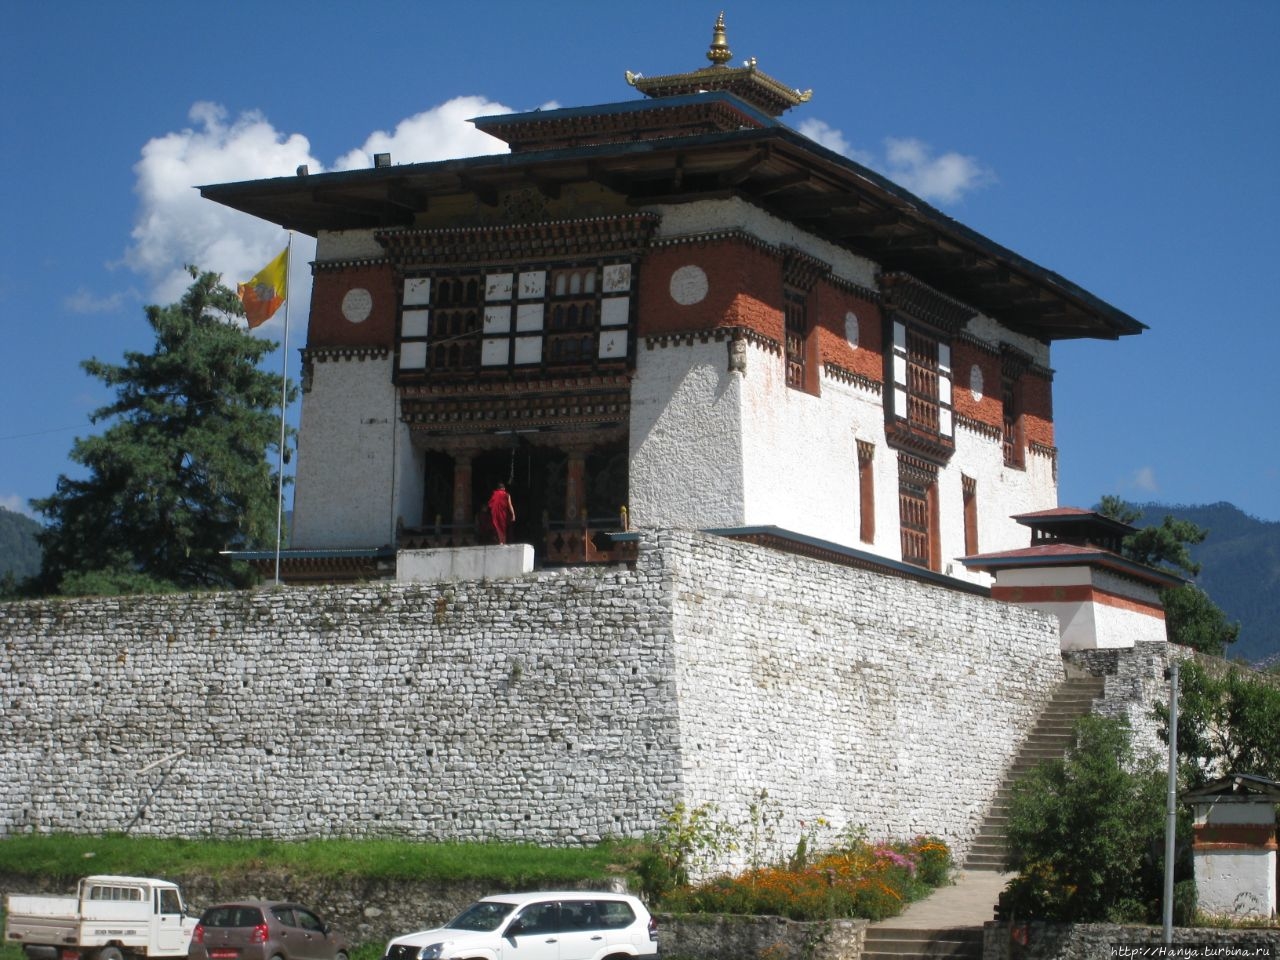 Мужской монастырь Дечен Подранг / Dechen Phodrang Monastery